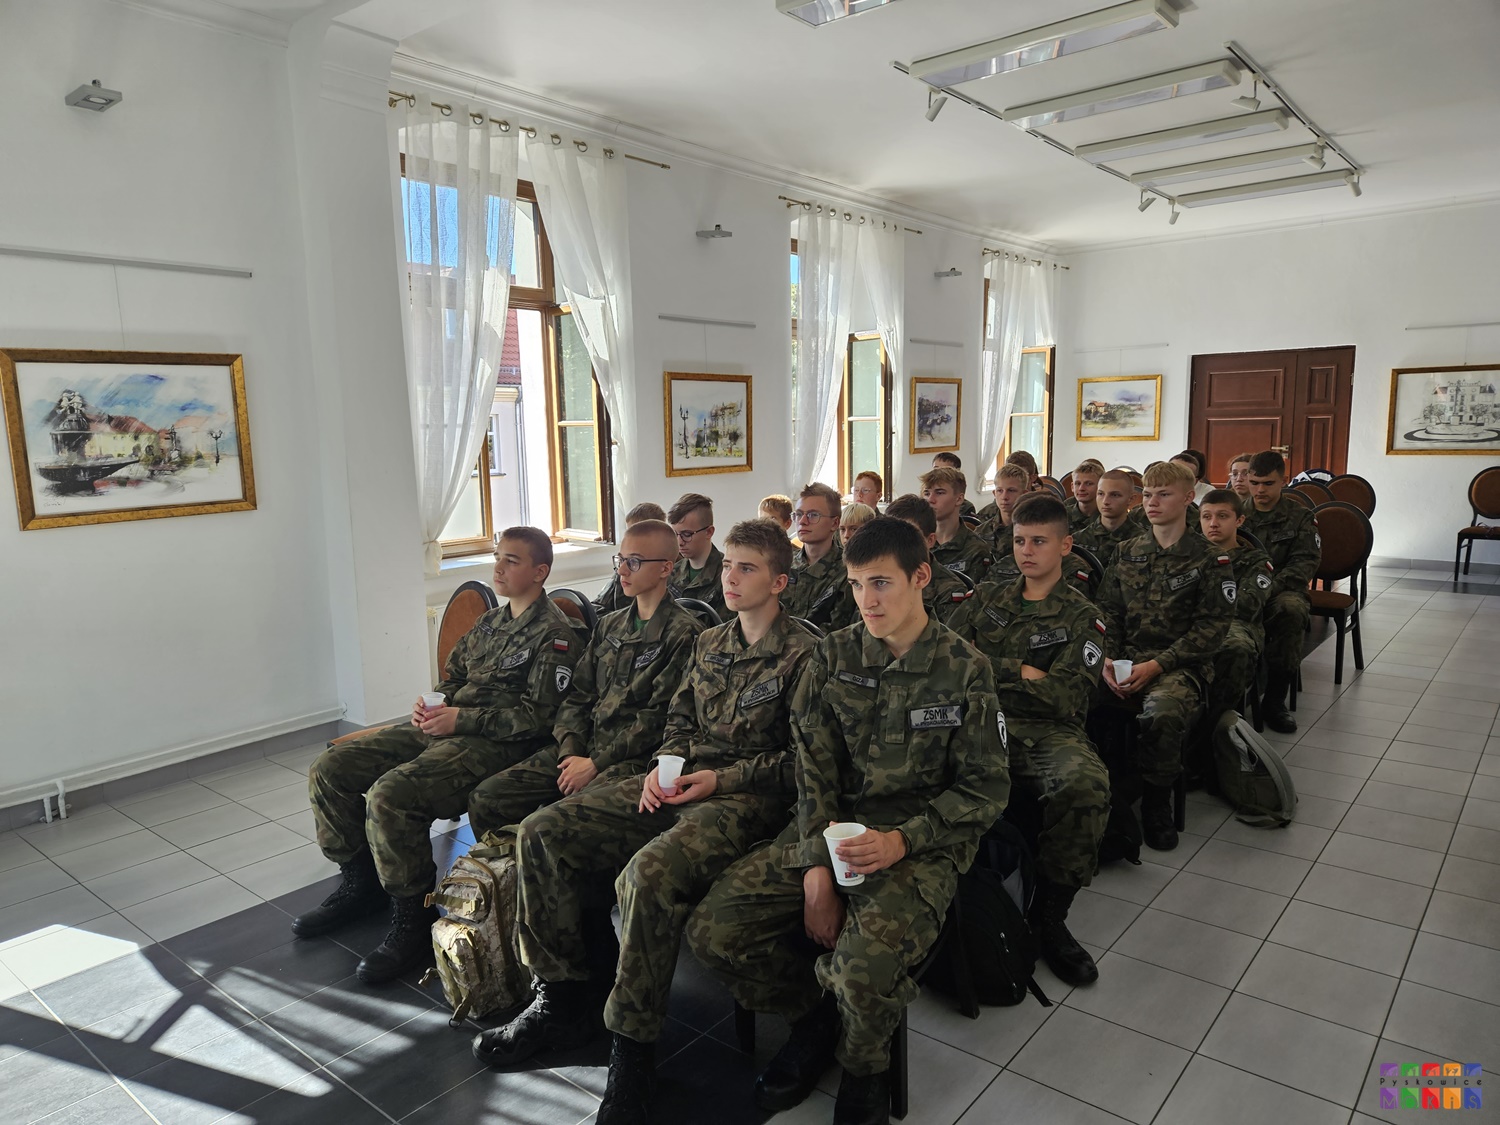 Zdjęcie przedstawia siedzących ludzi w mundurach na krzesłach w sali Centrum Wystawienniczego w Pyskowicach